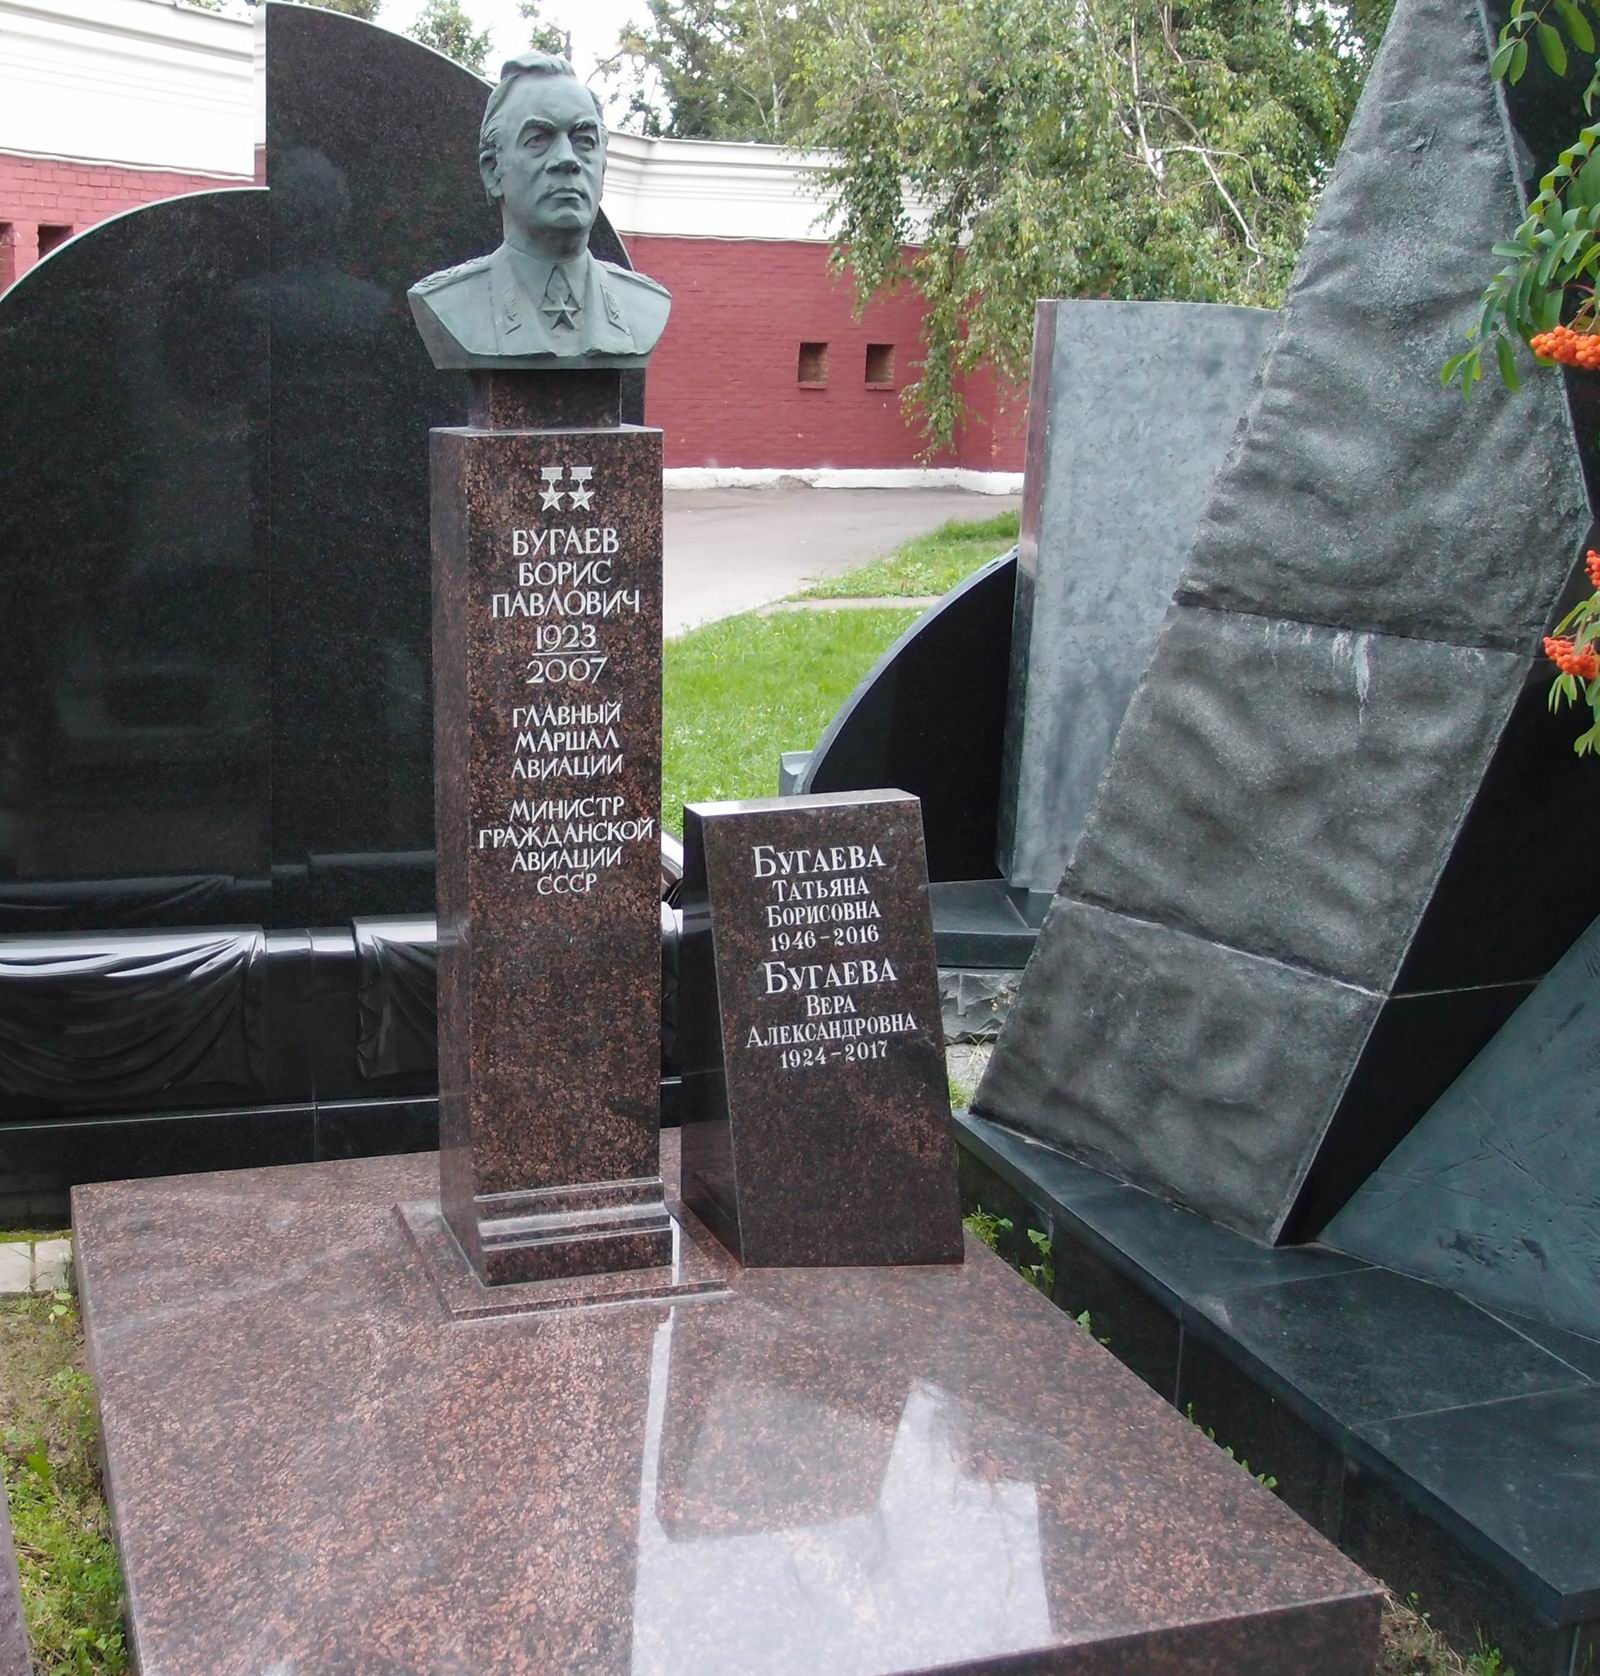 Памятник на могиле Бугаева Б.П. (1923–2007), ск. В.Цигаль, арх. В.Бухаев, на Новодевичьем кладбище (11–5–9). Нажмите левую кнопку мыши чтобы увидеть фрагмент памятника.